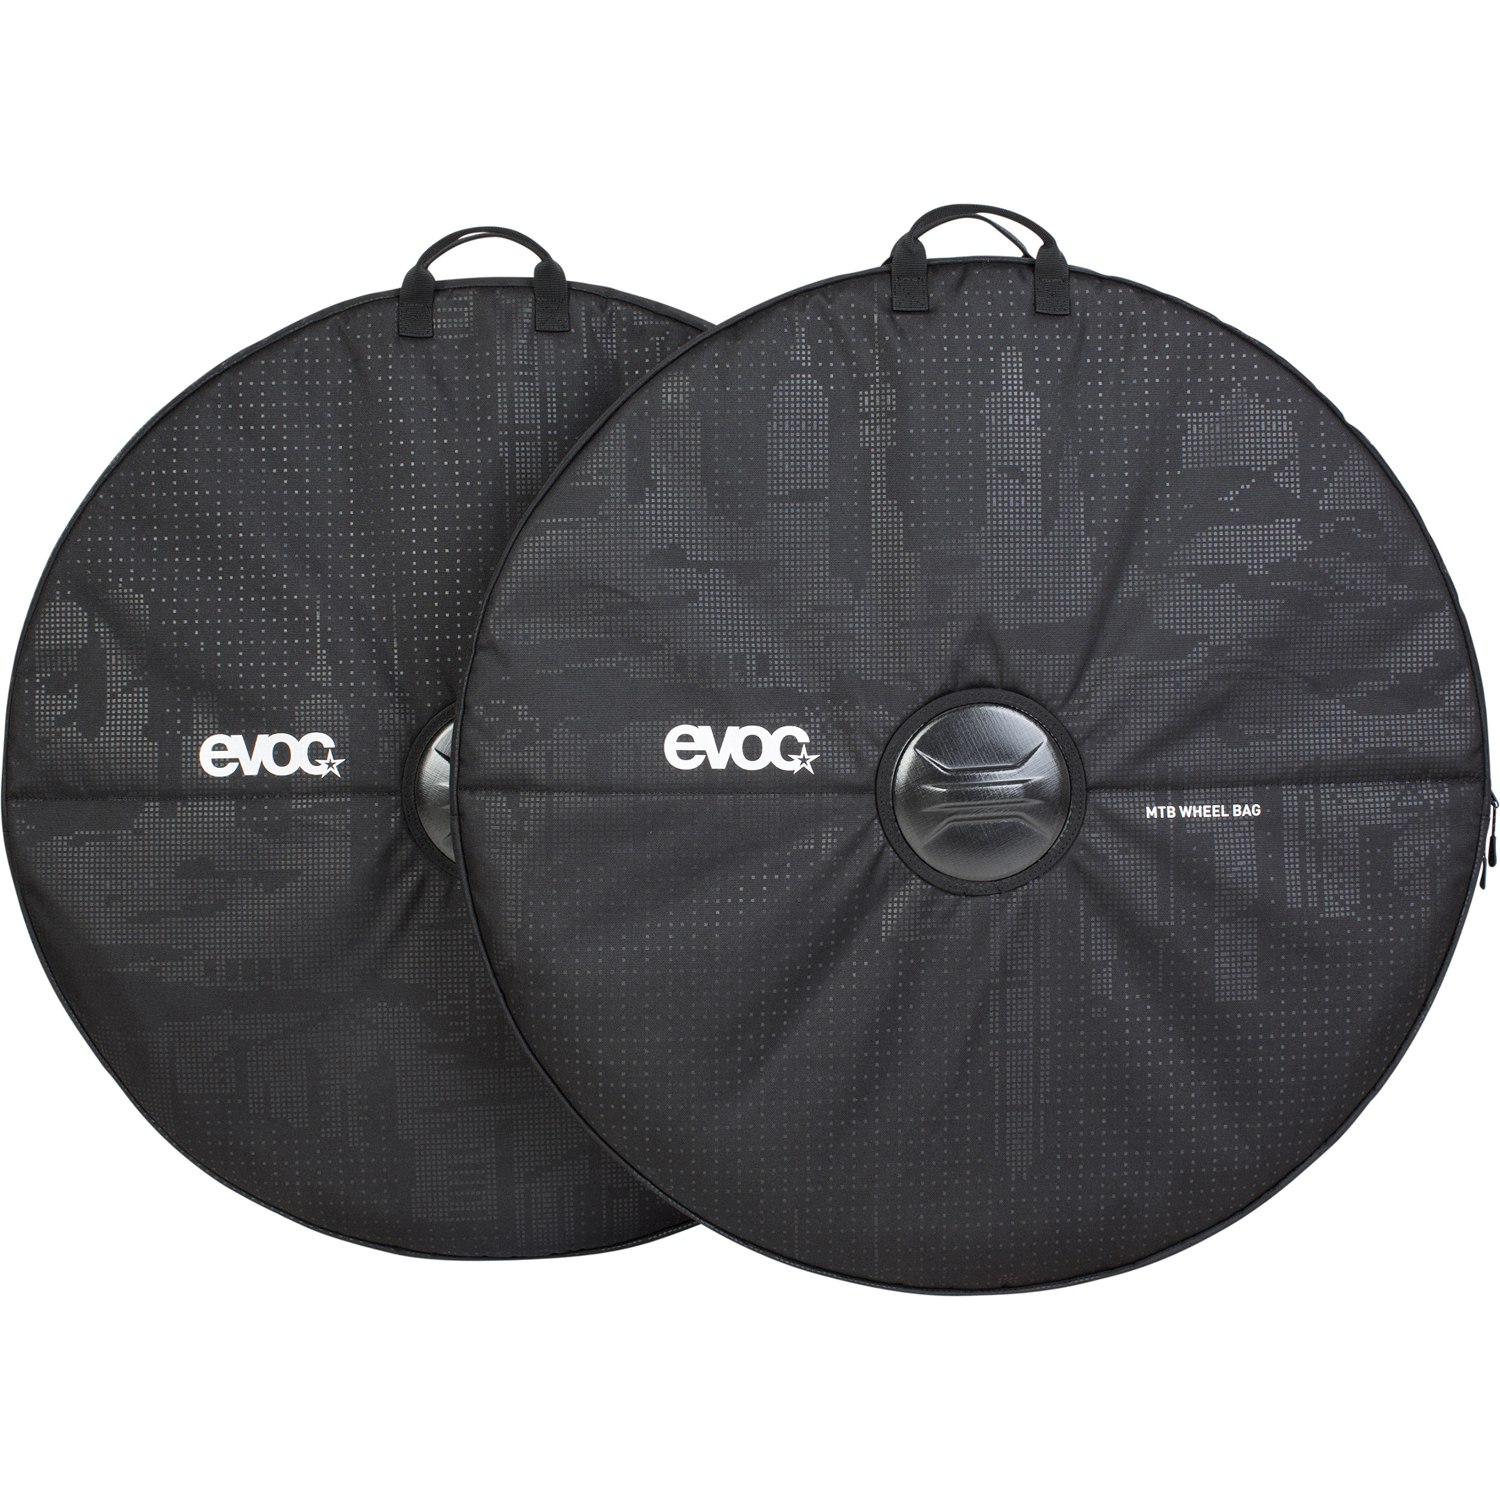 Productfoto van Evoc MTB WHEEL BAG - (2pcs set) - Black